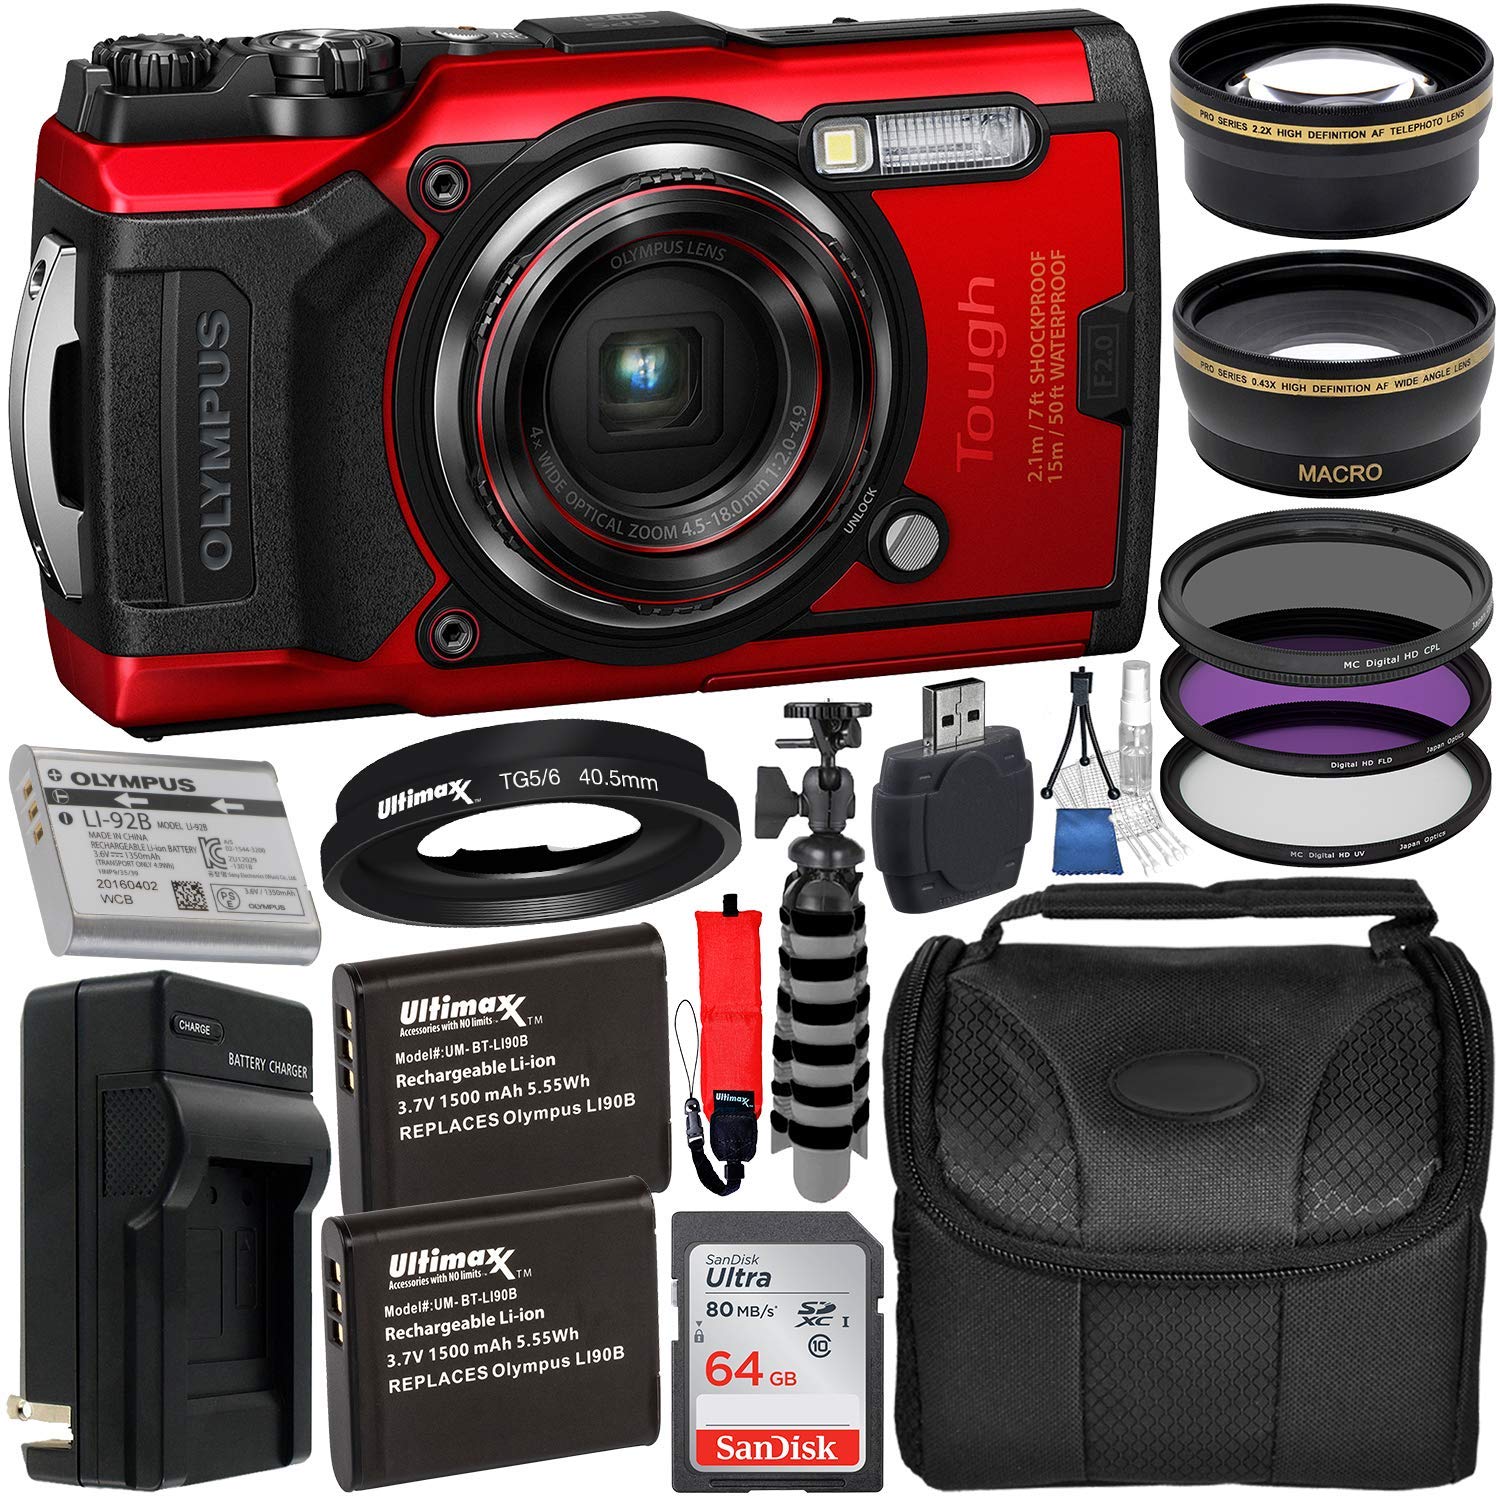 Olympus Tough TG-6 Digital Camera (Red) - V104210RU000 with Accessory Bundle